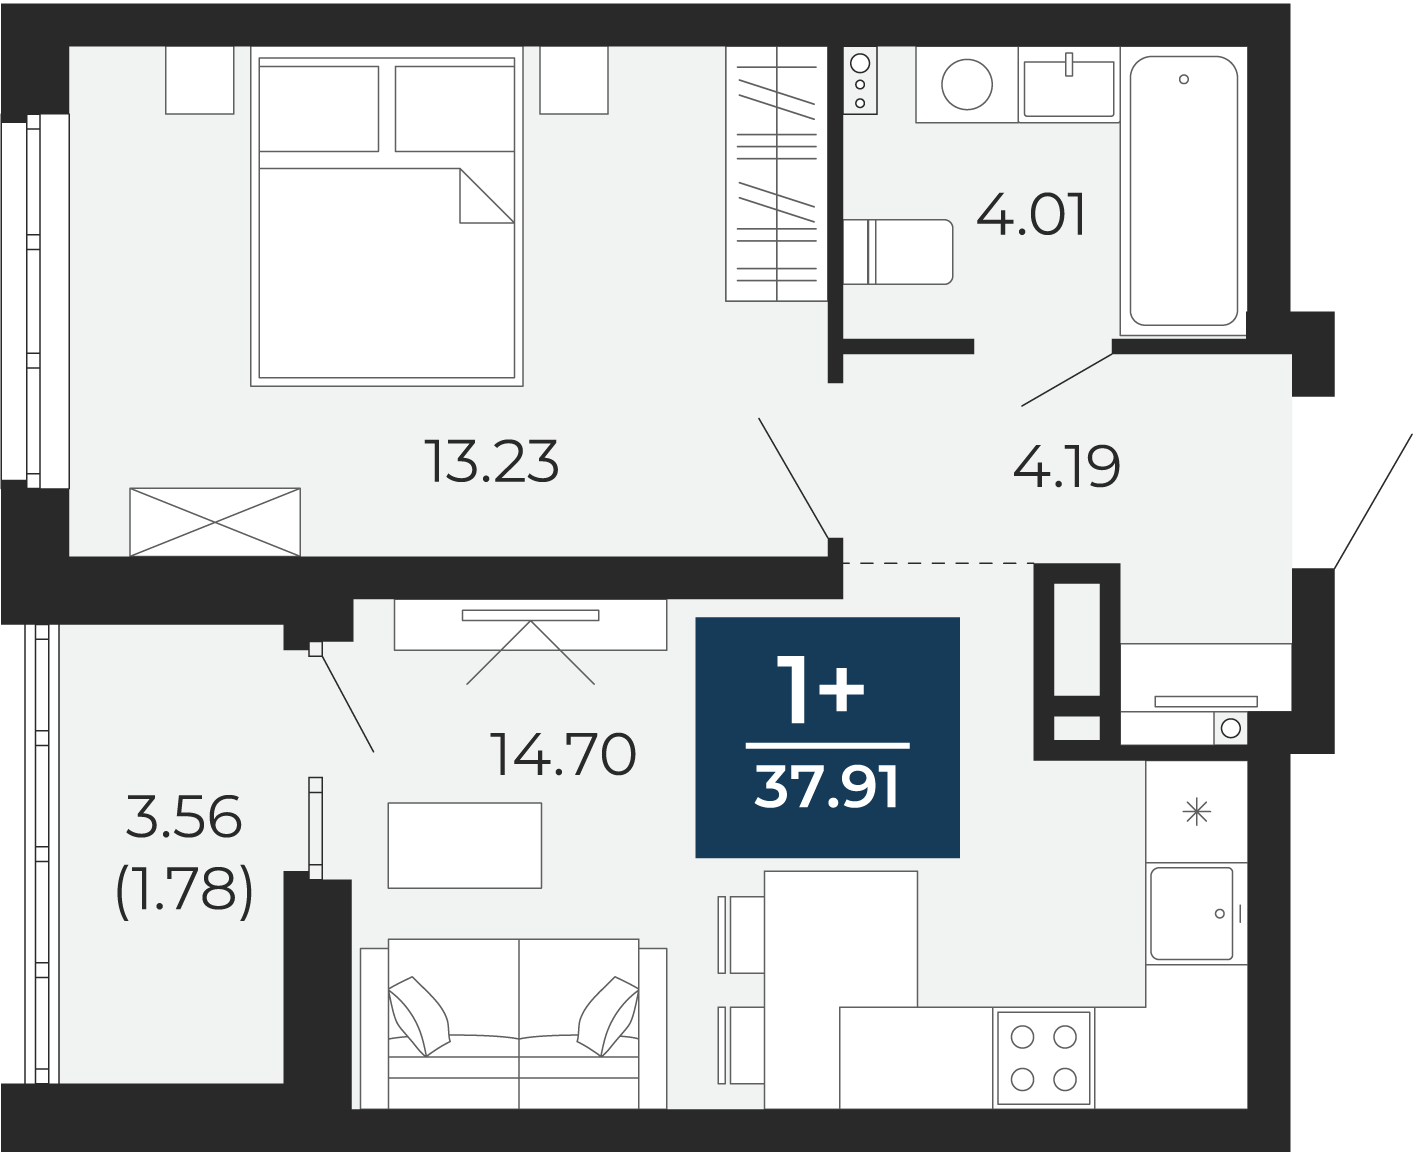 Квартира № 130, 1-комнатная, 37.91 кв. м, 13 этаж